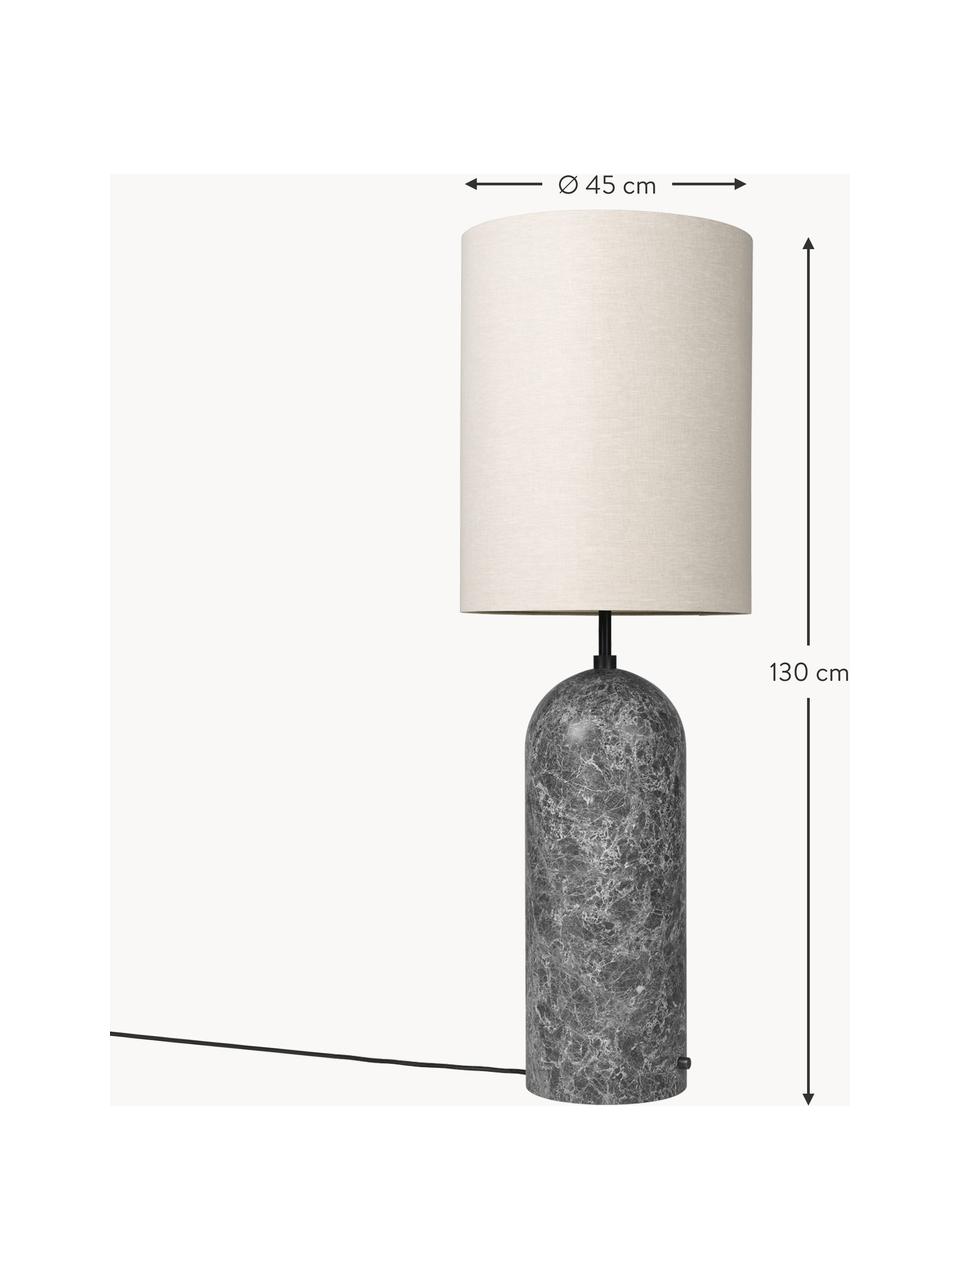 Kleine dimmbare Stehlampe Gravity mit Marmorfuß, Lampenschirm: Stoff, Lampenfuß: Marmor, Hellbeige, Dunkelgrau marmoriert, H 130 cm